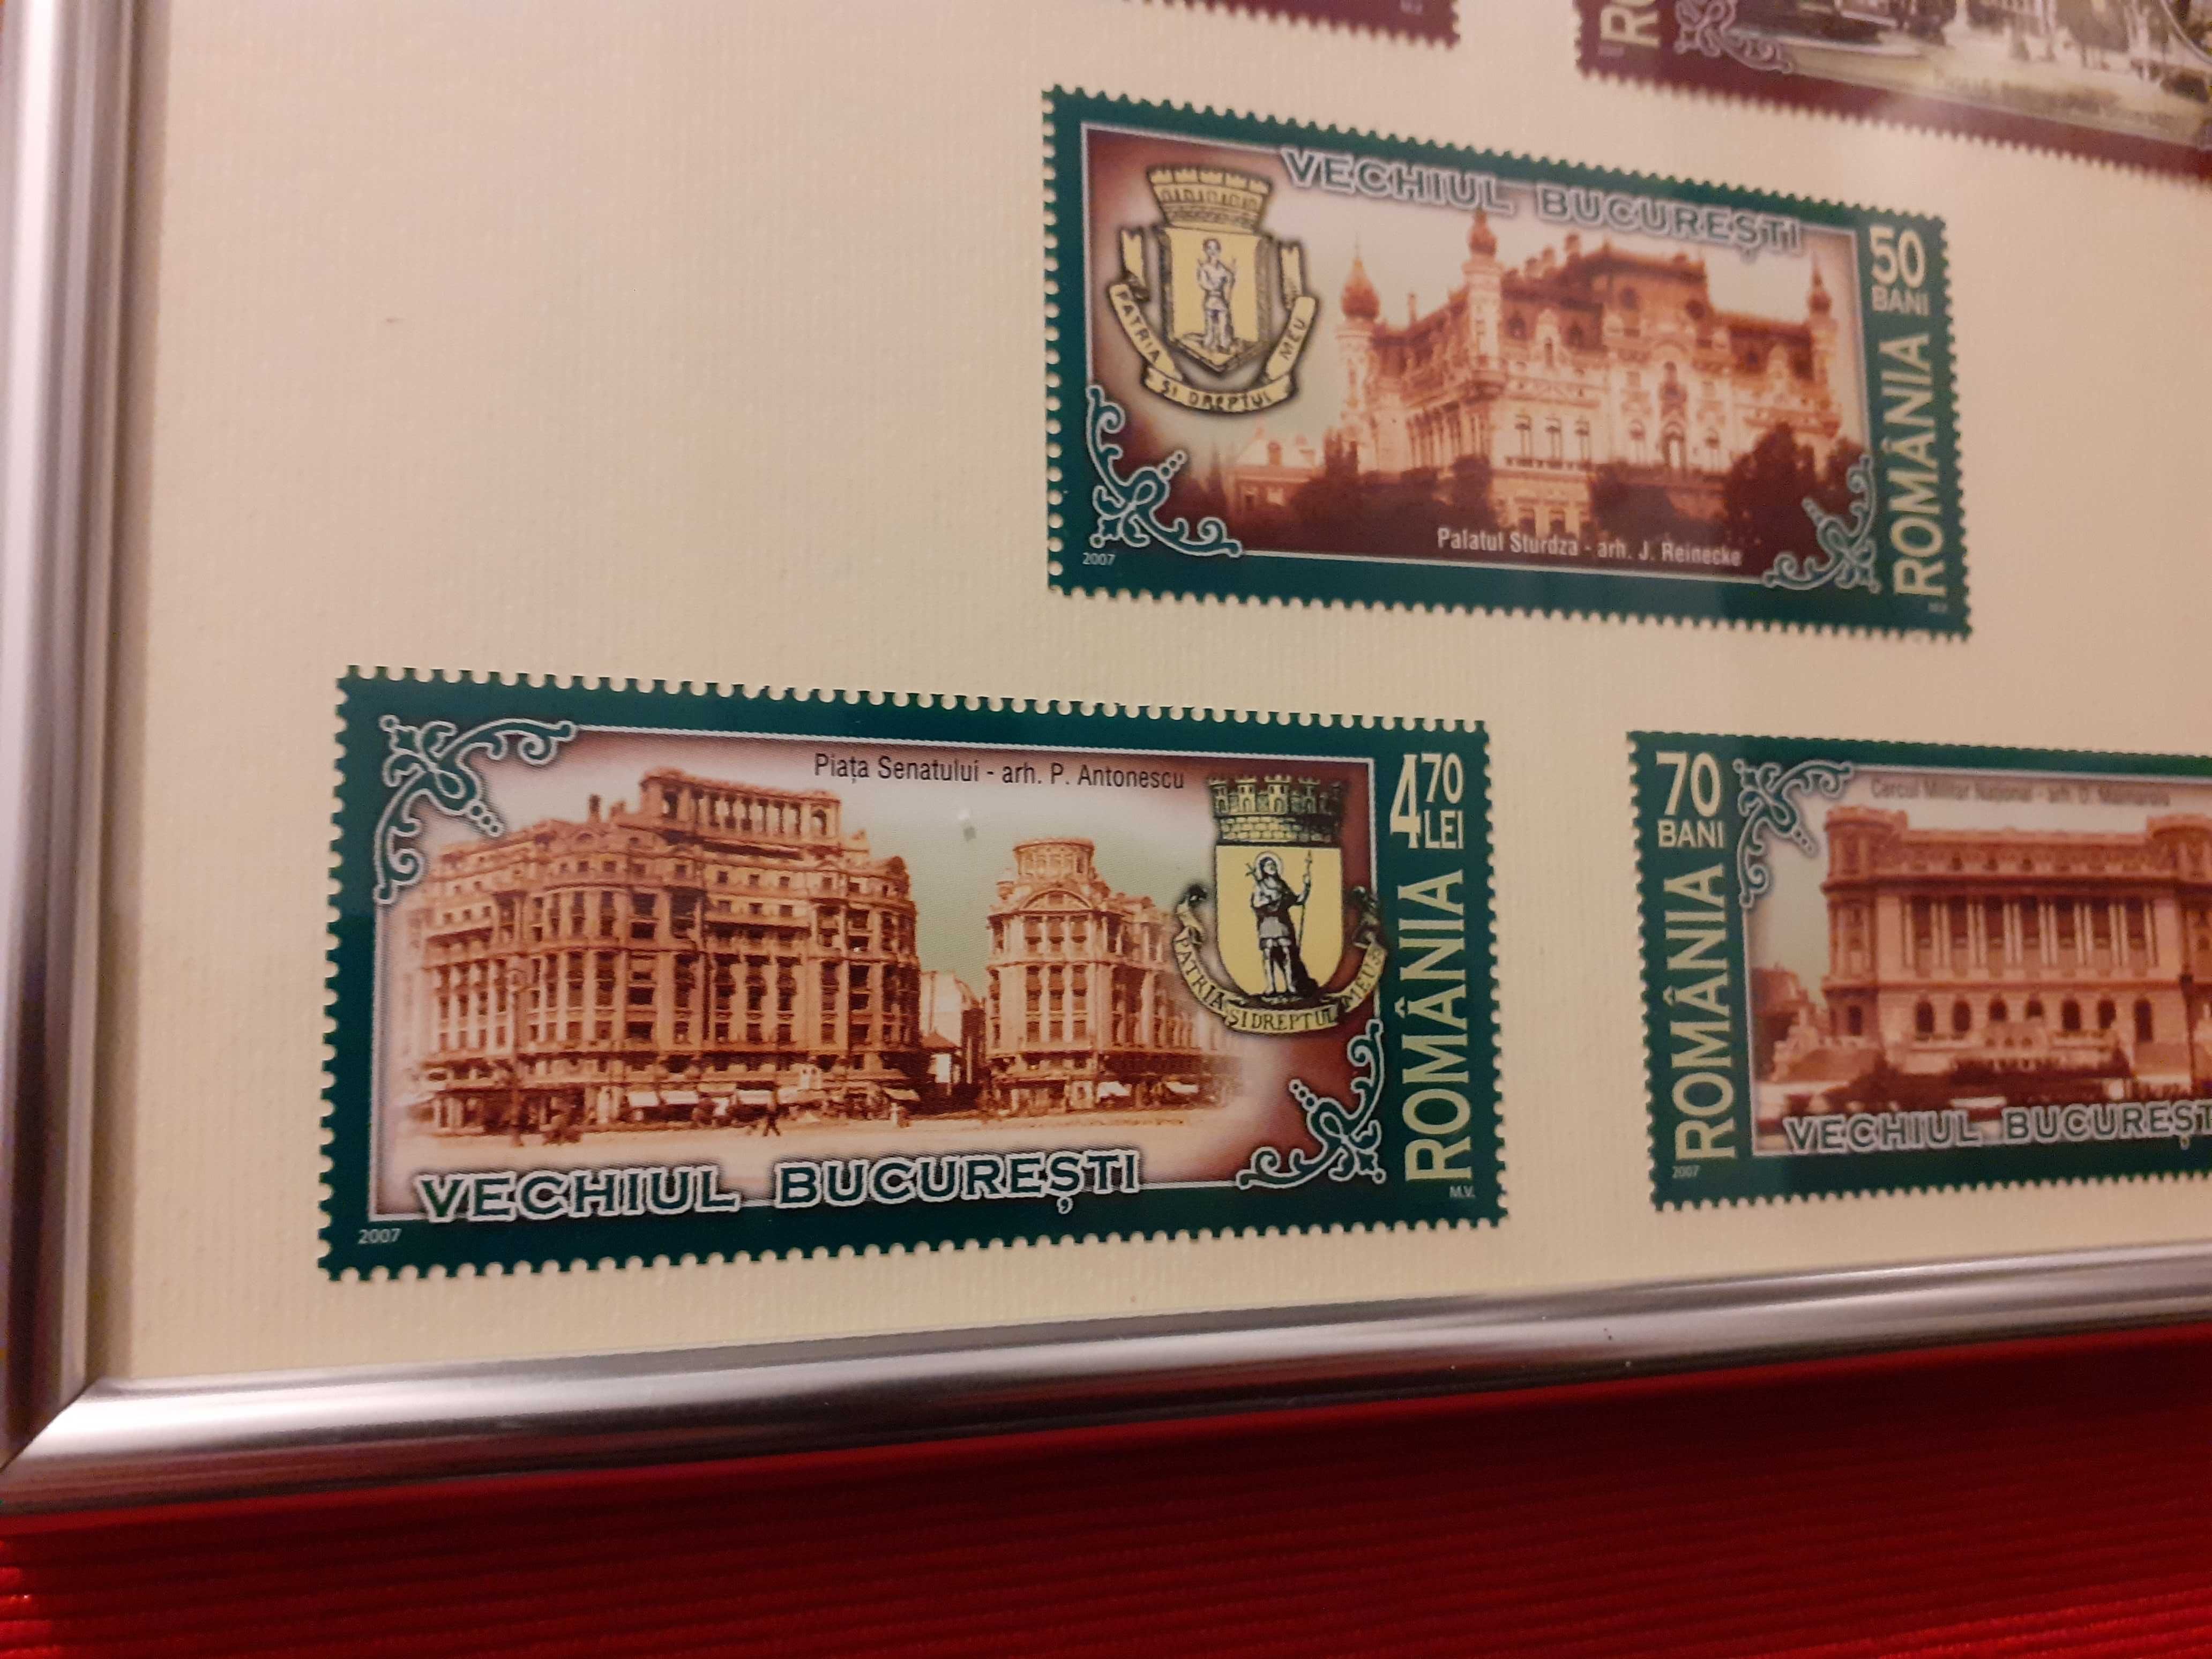 Tablou cu seria de timbre de colectie Vechiul Bucuresti (2007)